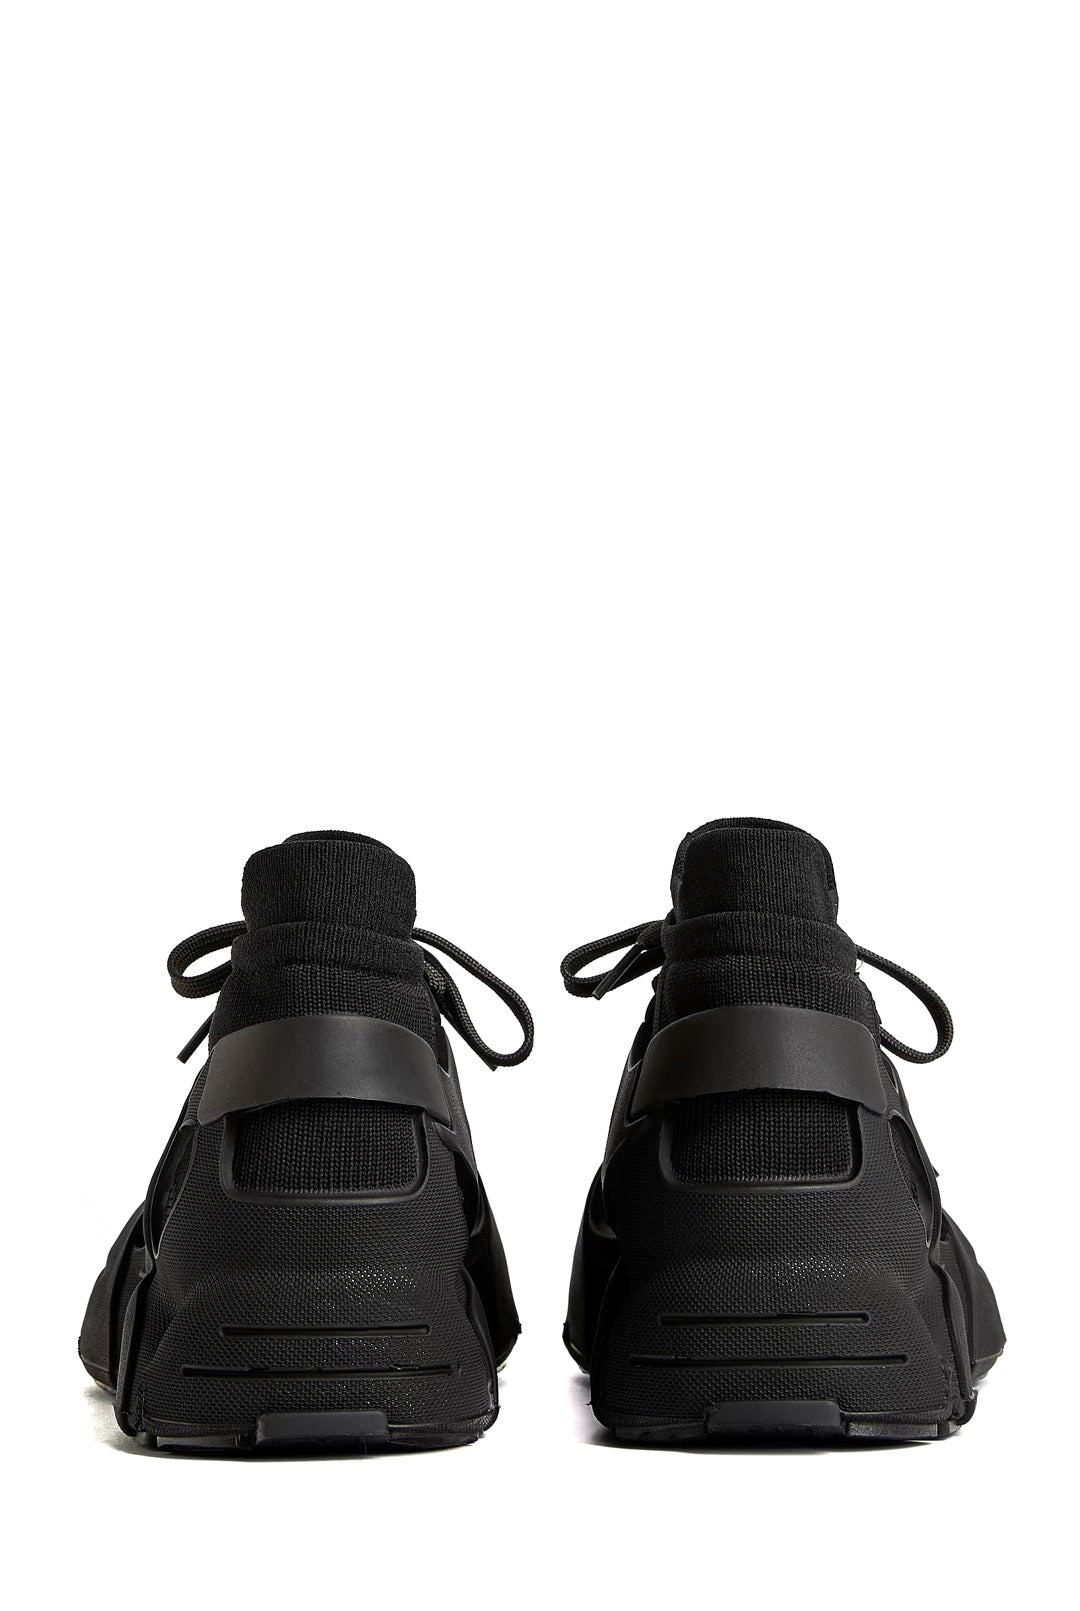 CamperLab Tossu Sneakers, Black